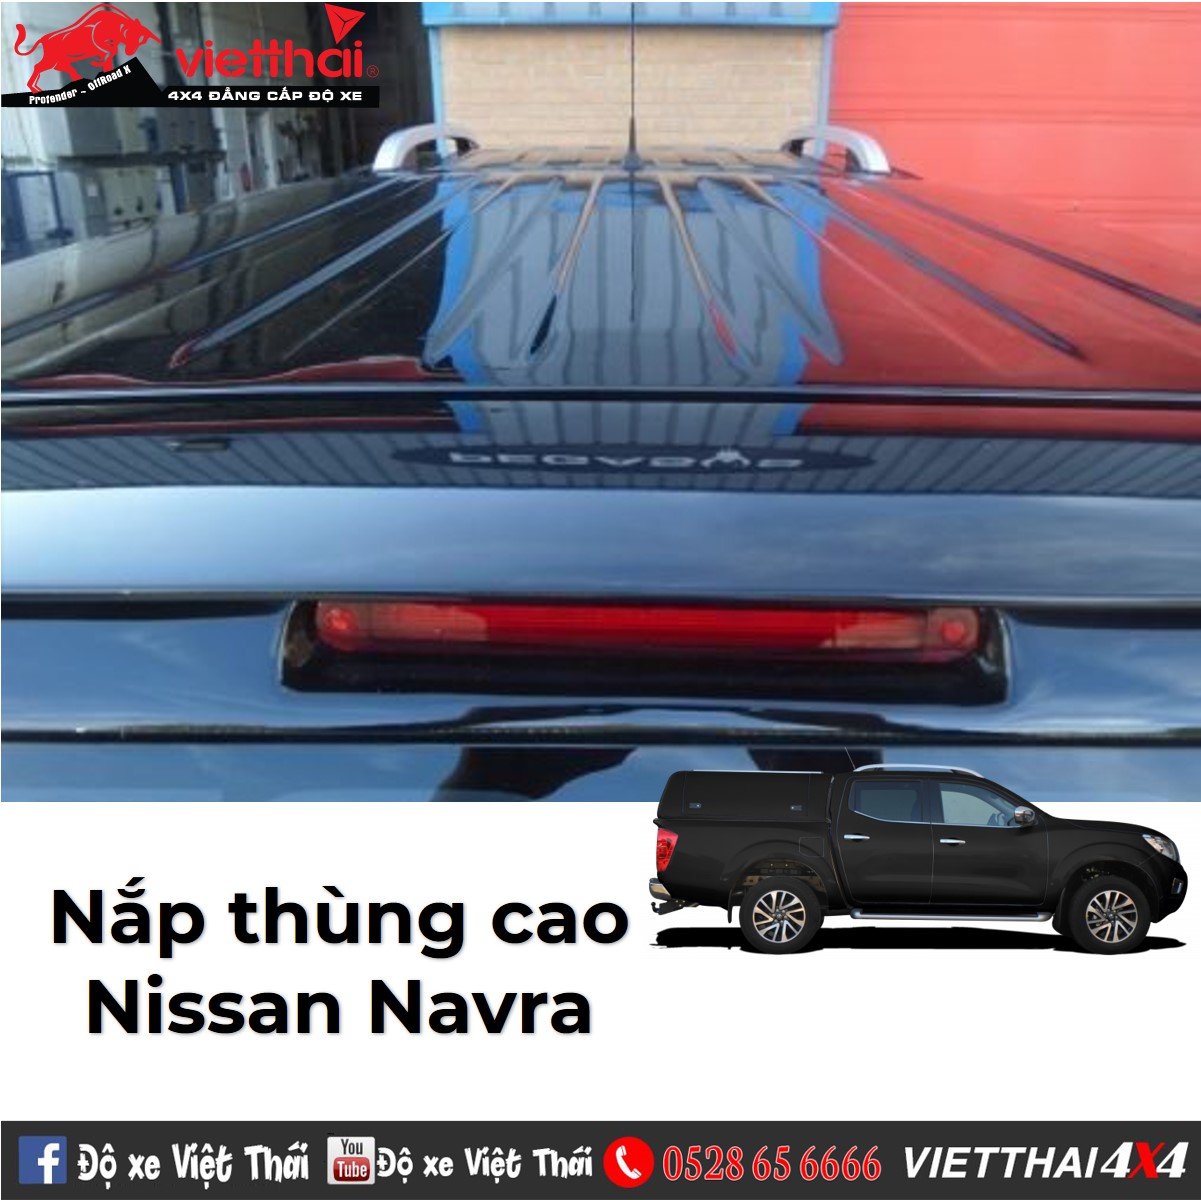 Nắp thùng cao mui cứng không có khóa trung tâm dành cho Nissan Navara